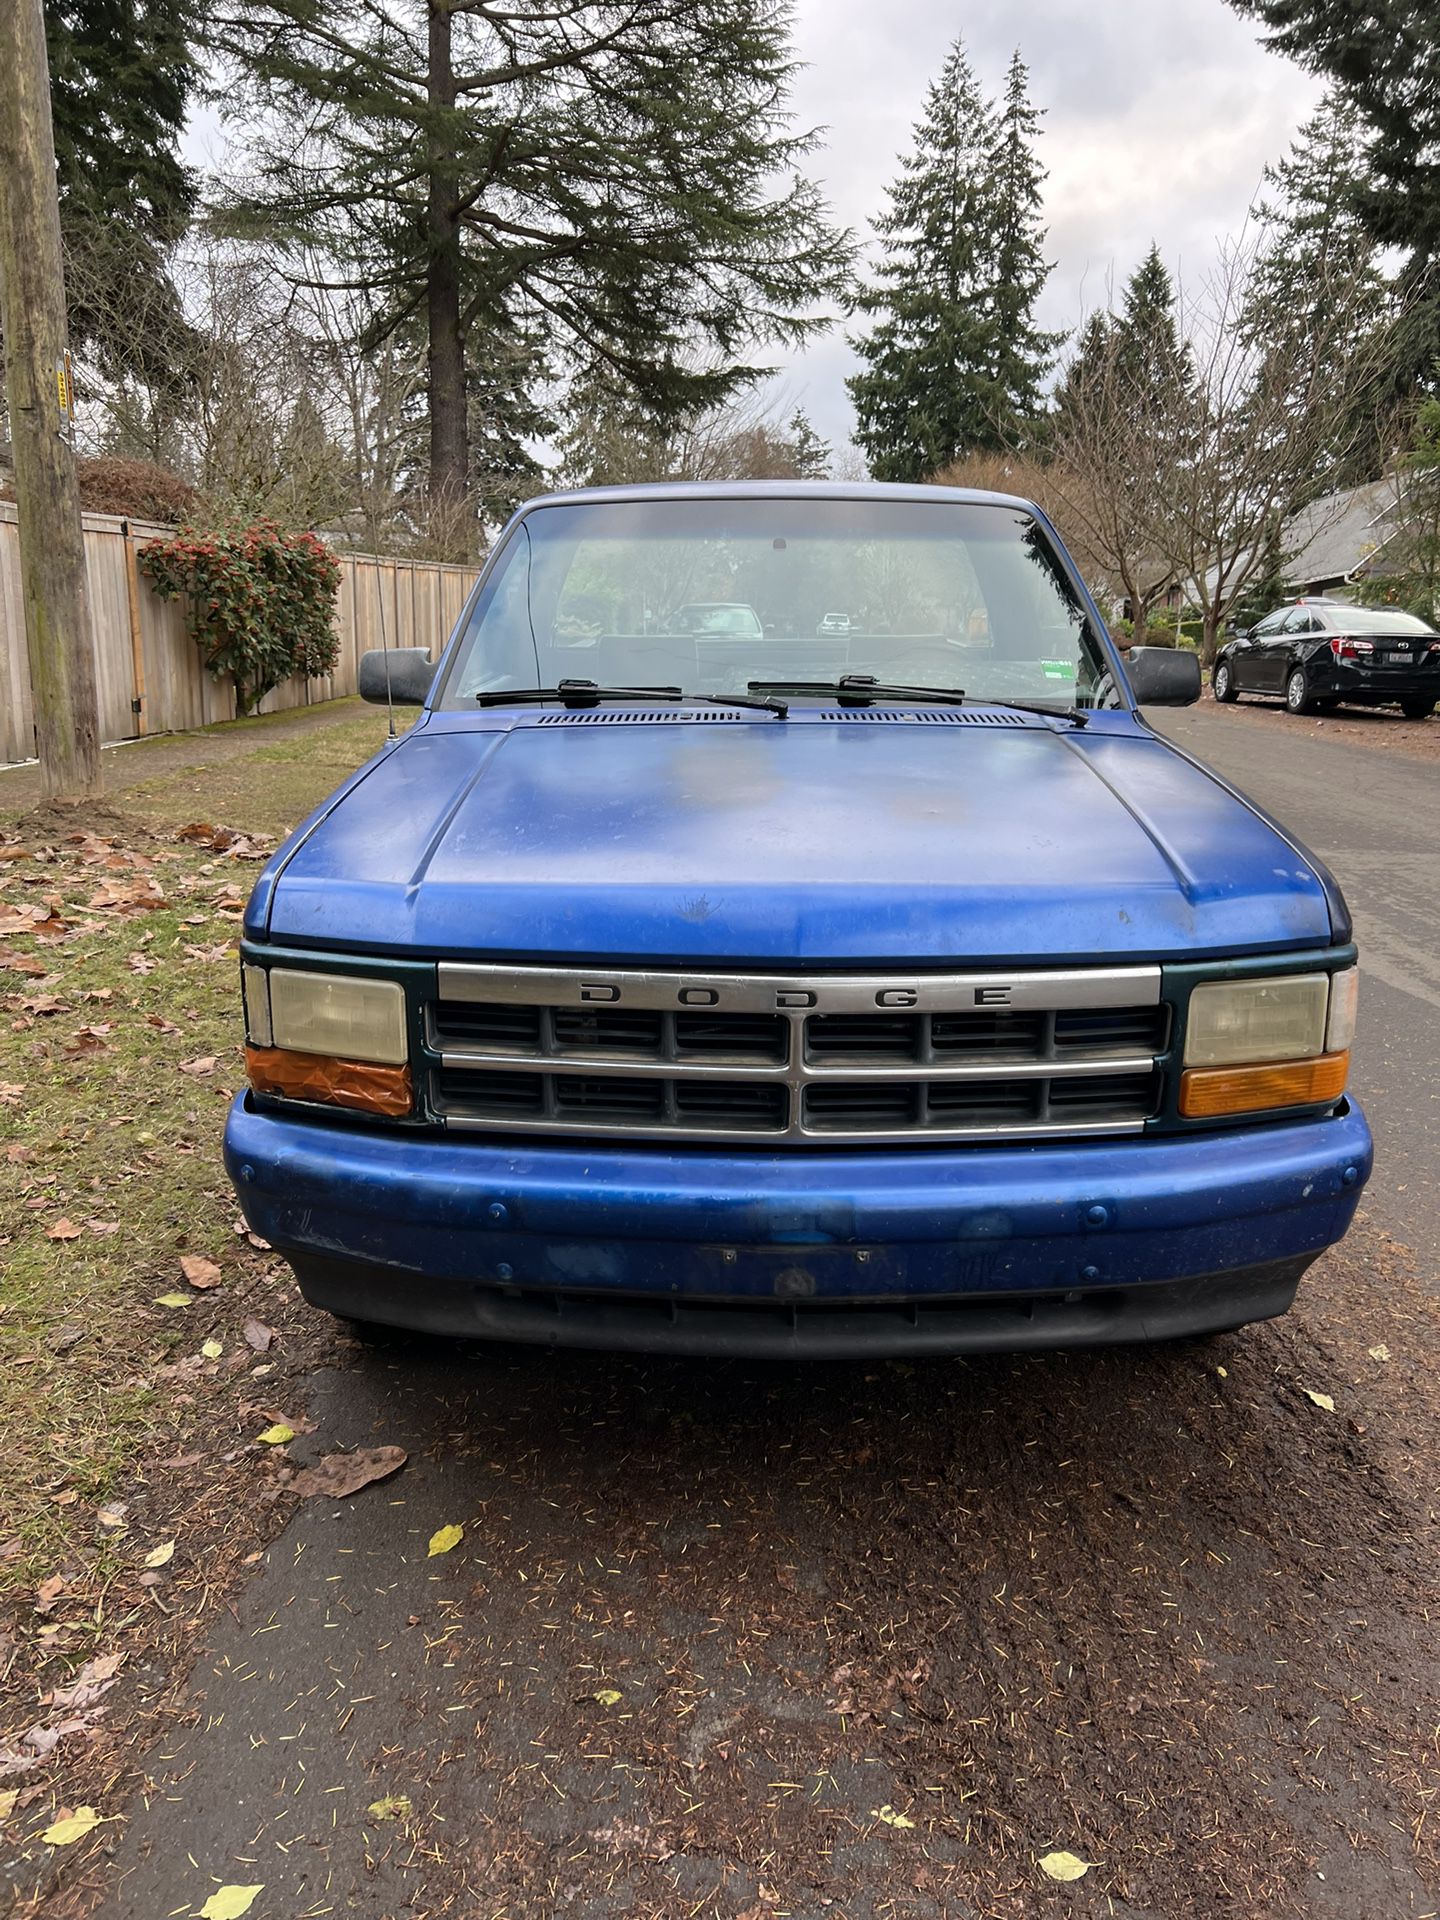 1996 Dodge Dakota For Sale In Seattle Wa Offerup